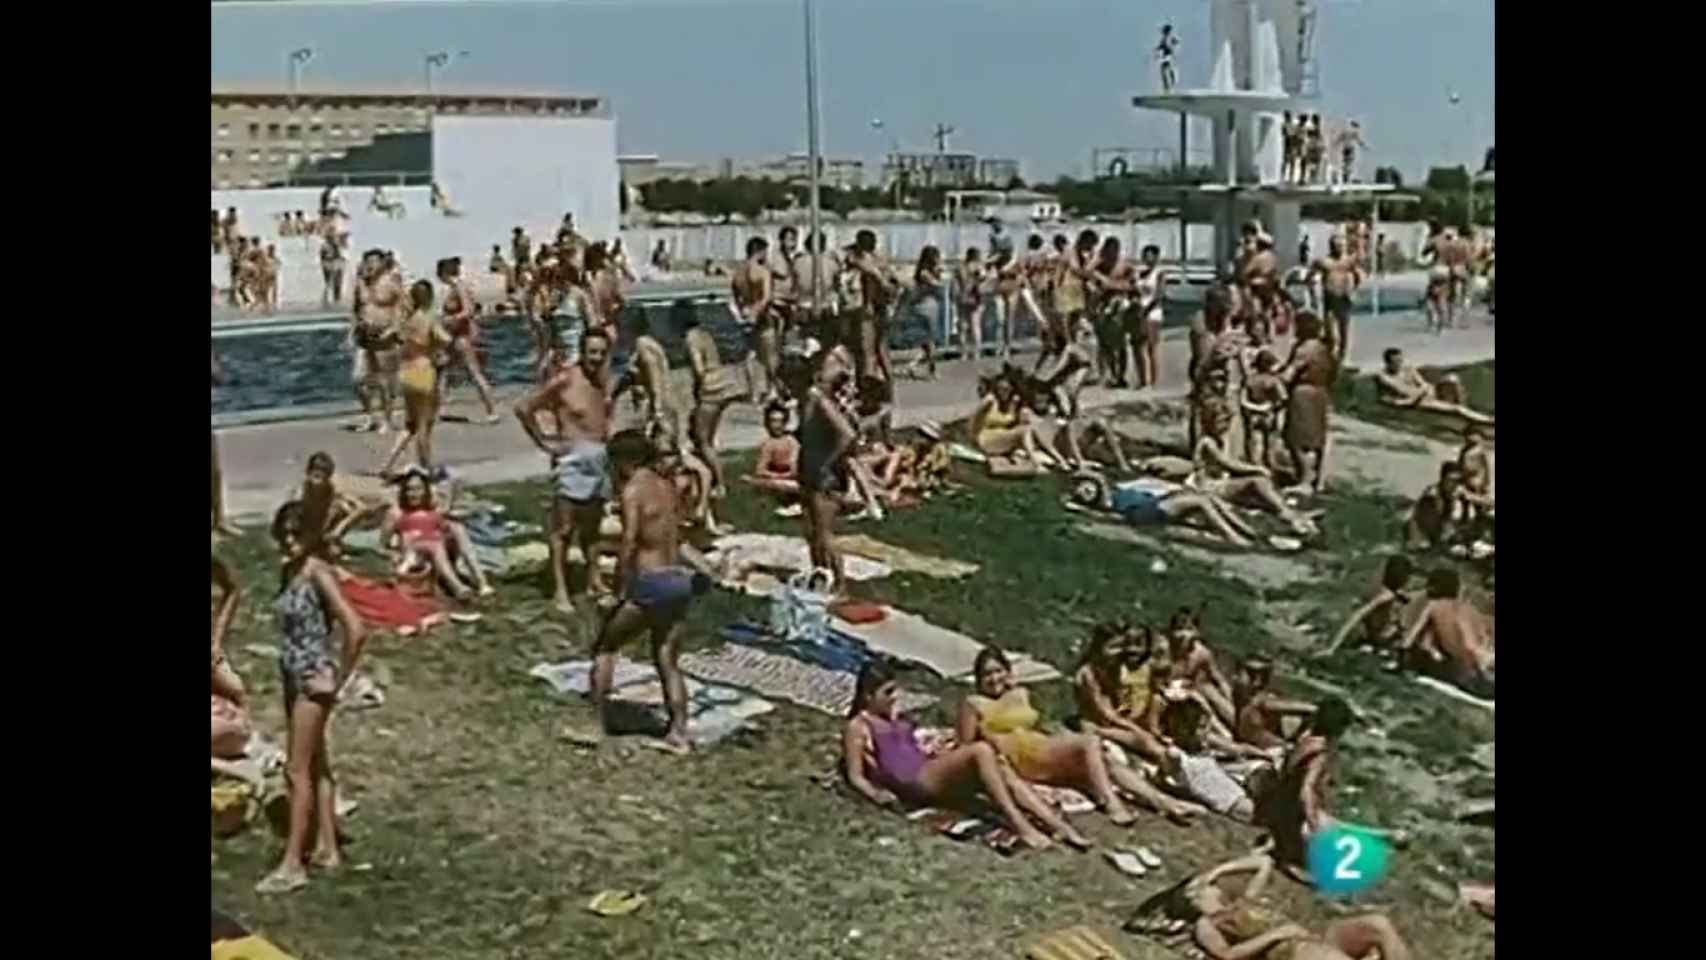 Aquel verano de 1970 en Zamora: un antiguo vídeo sobre la capital muestra una ciudad muy distinta